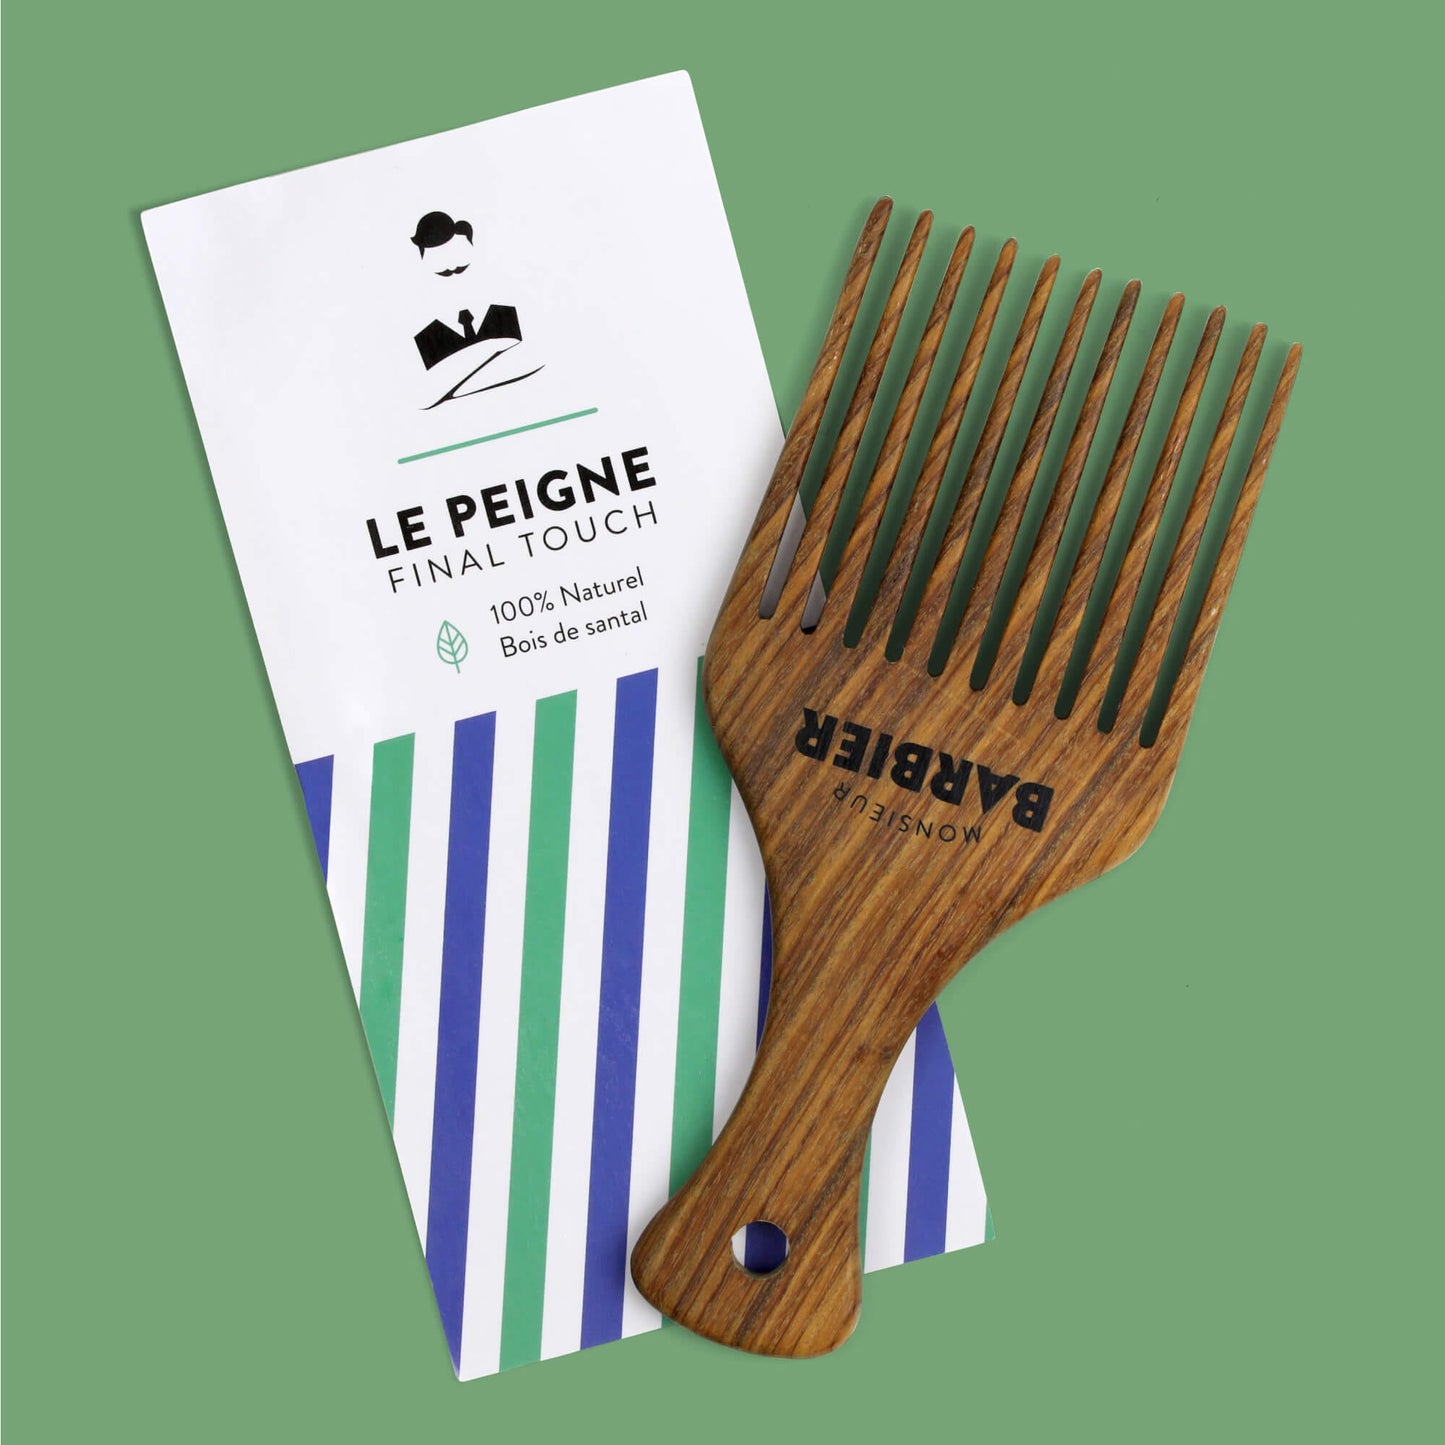 Peigne Styling pour Homme Barbe et Cheveux par Monsieur BARBIER - packaging